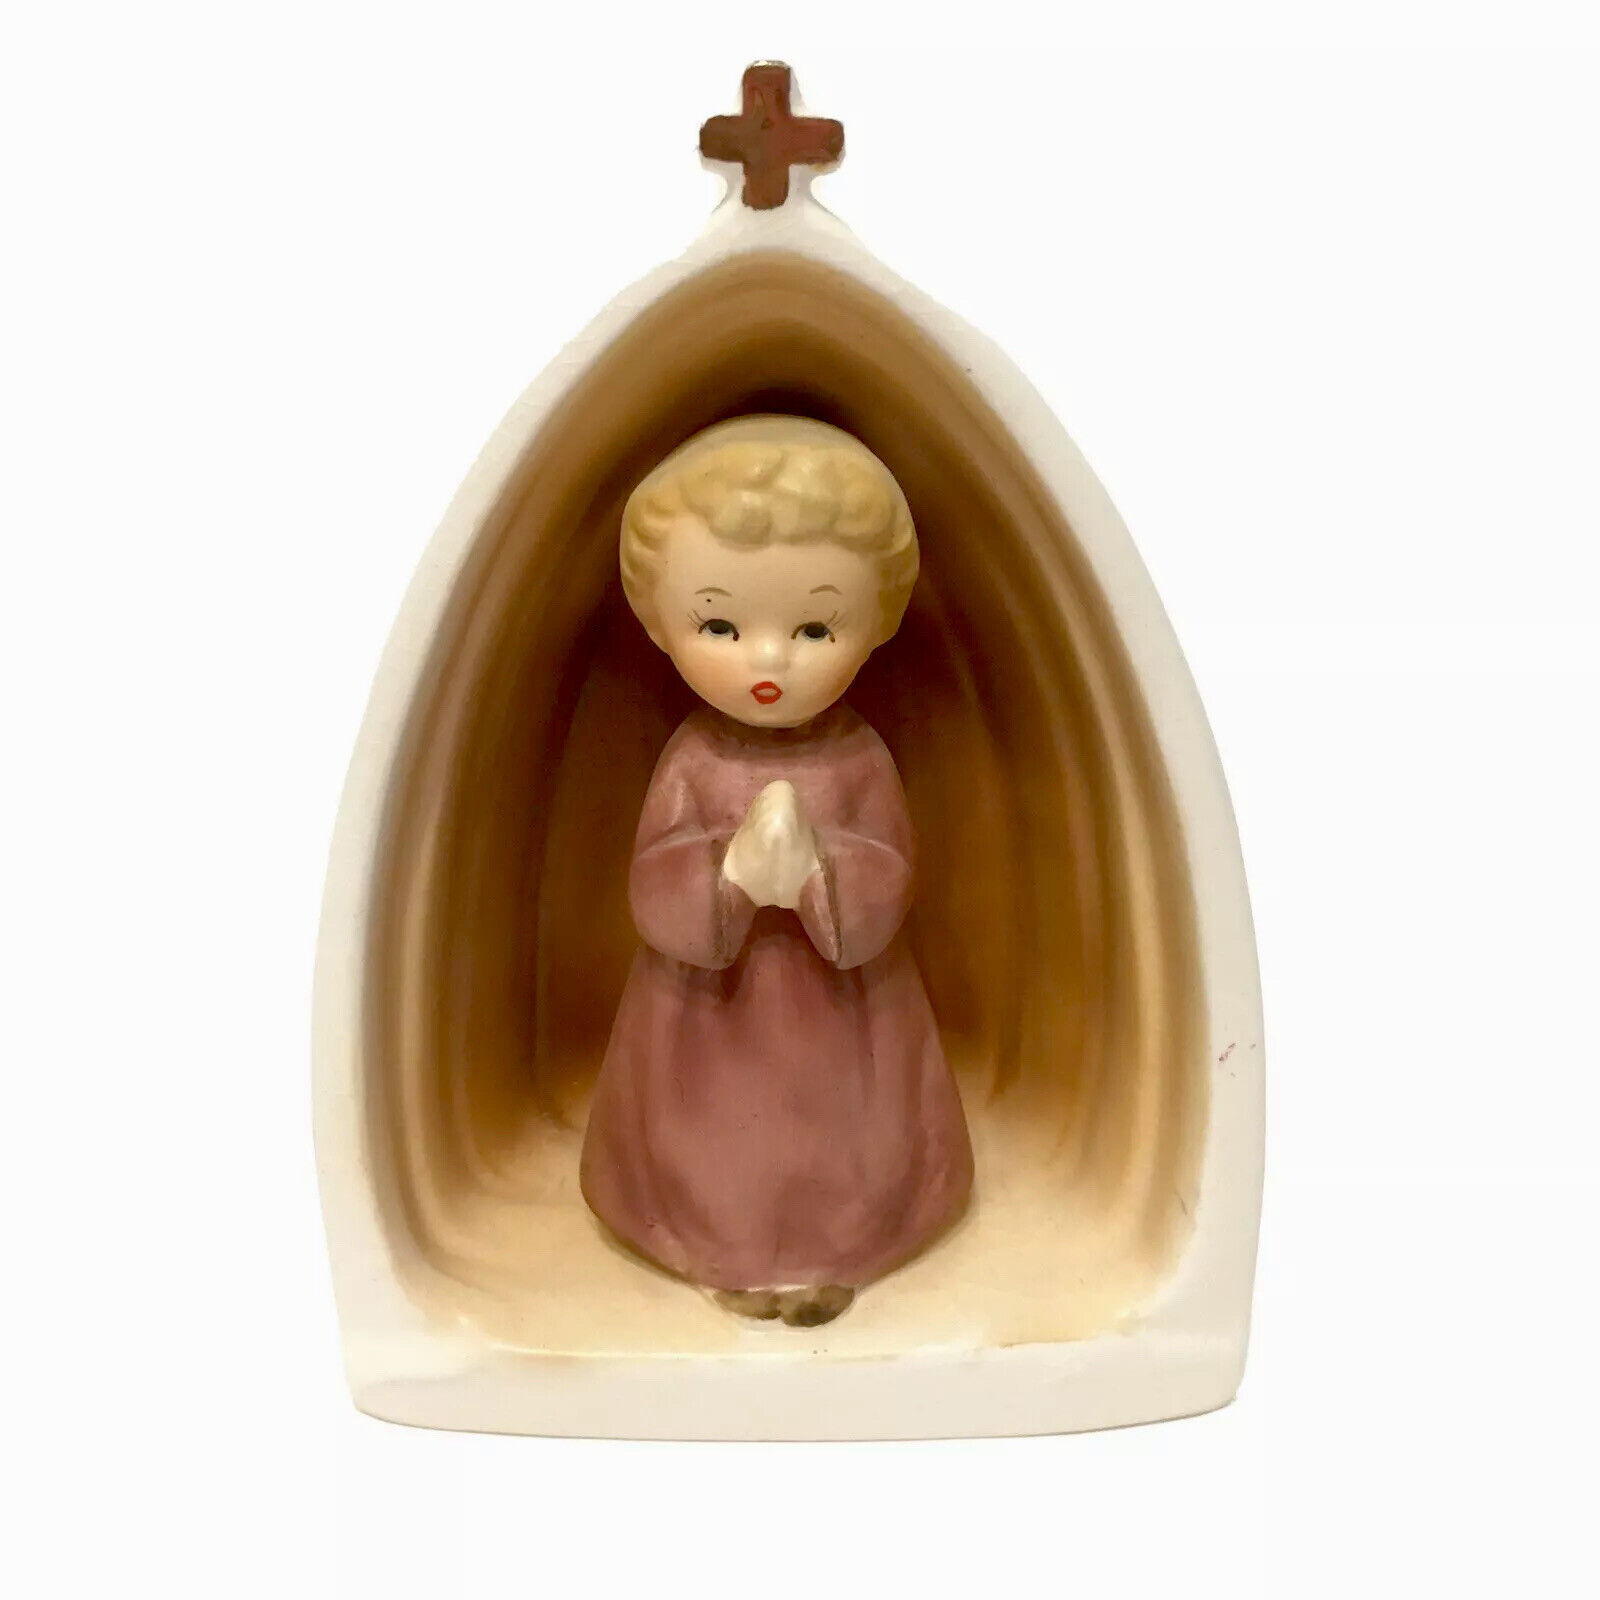 Vintage Nikoniko Ceramic Usher Alter Boy Figurine Catholic Religious Christmas